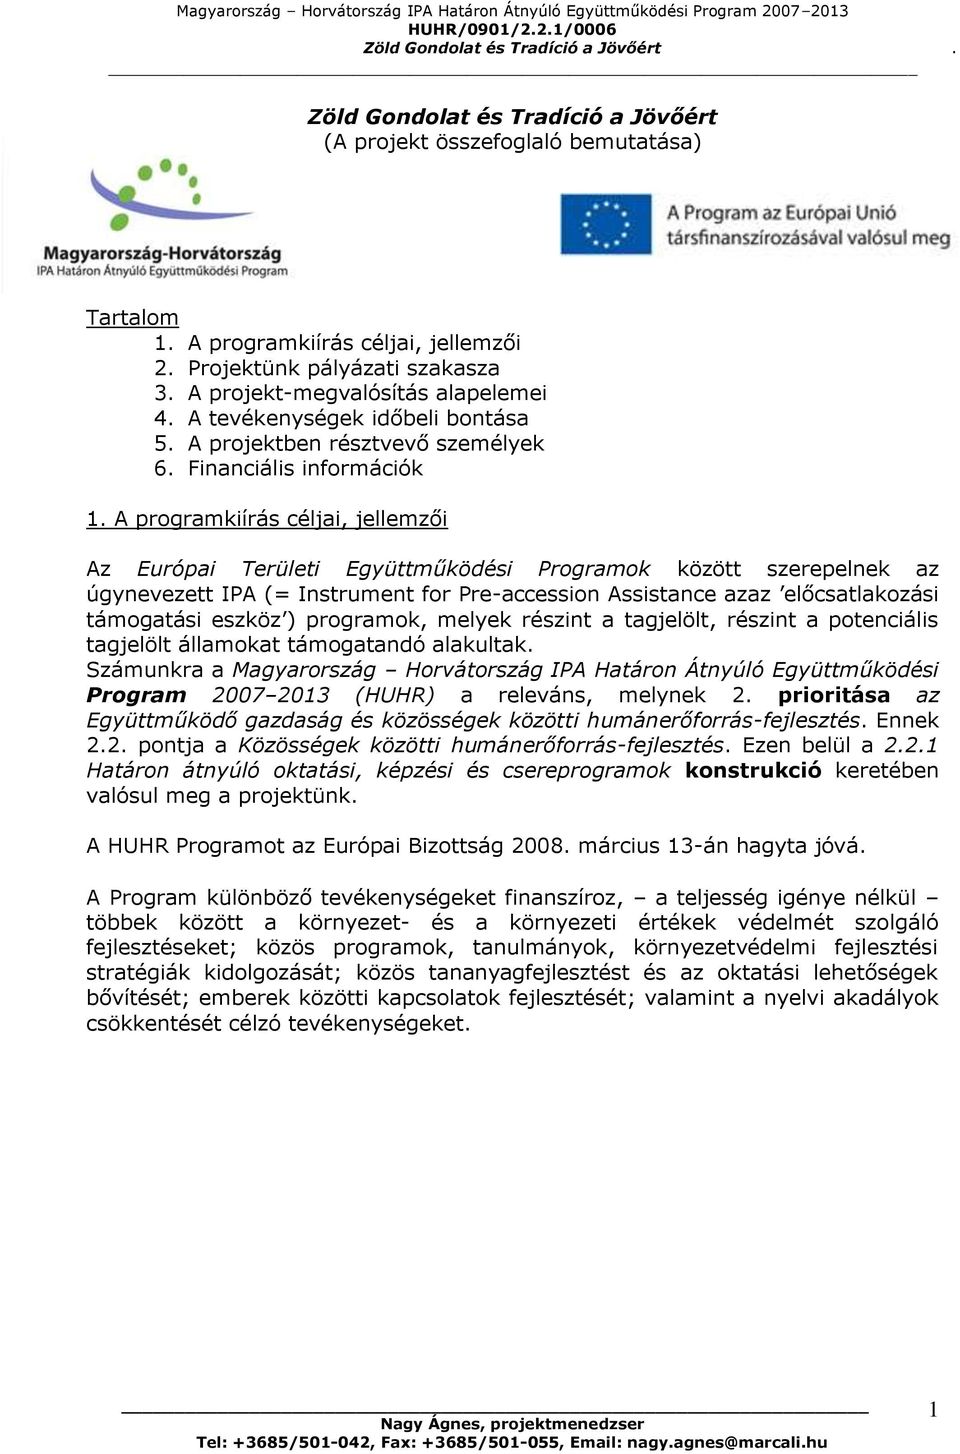 A programkiírás céljai, jellemzői Az Európai Területi Együttműködési Programok között szerepelnek az úgynevezett IPA (= Instrument for Pre-accession Assistance azaz előcsatlakozási támogatási eszköz